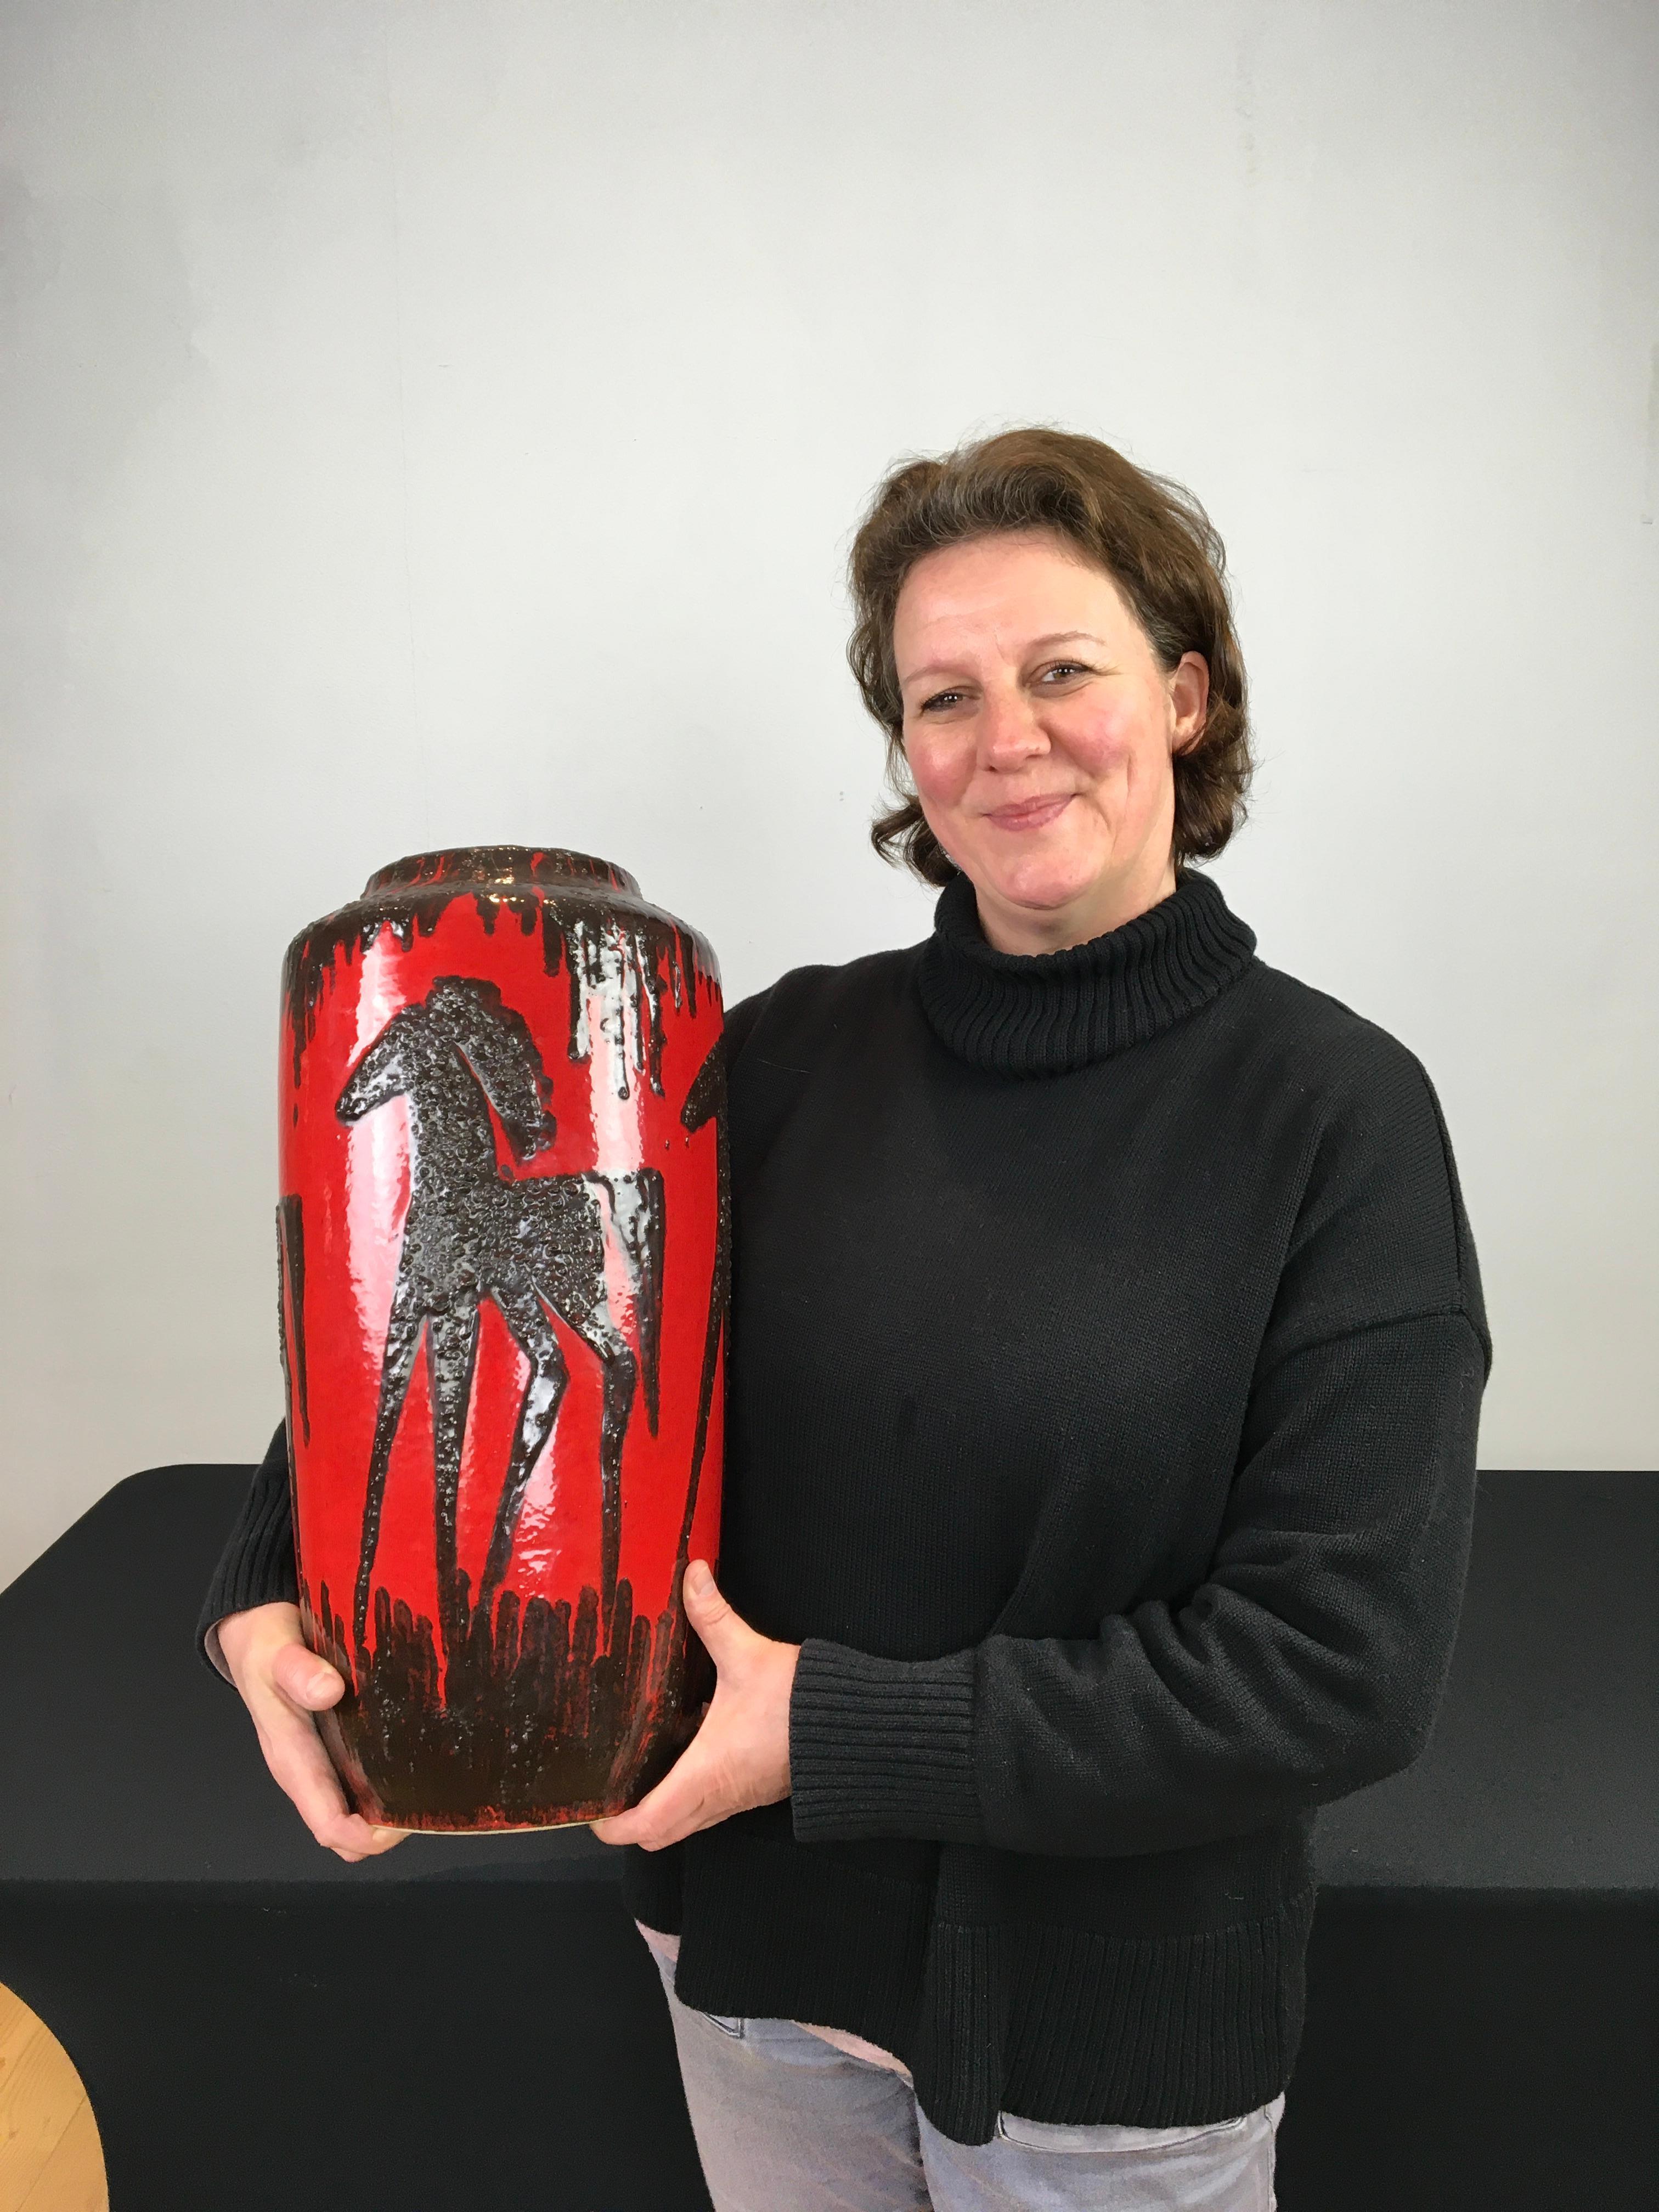 Vase en lave grasse rouge des années 1960 avec des chevaux.
Vase en poterie d'art de l'Allemagne de l'Ouest par Scheurich 
est de couleur rouge avec des chevaux marron foncé ou noirs.
Le motif est embossé ou en relief sur ce vase rouge